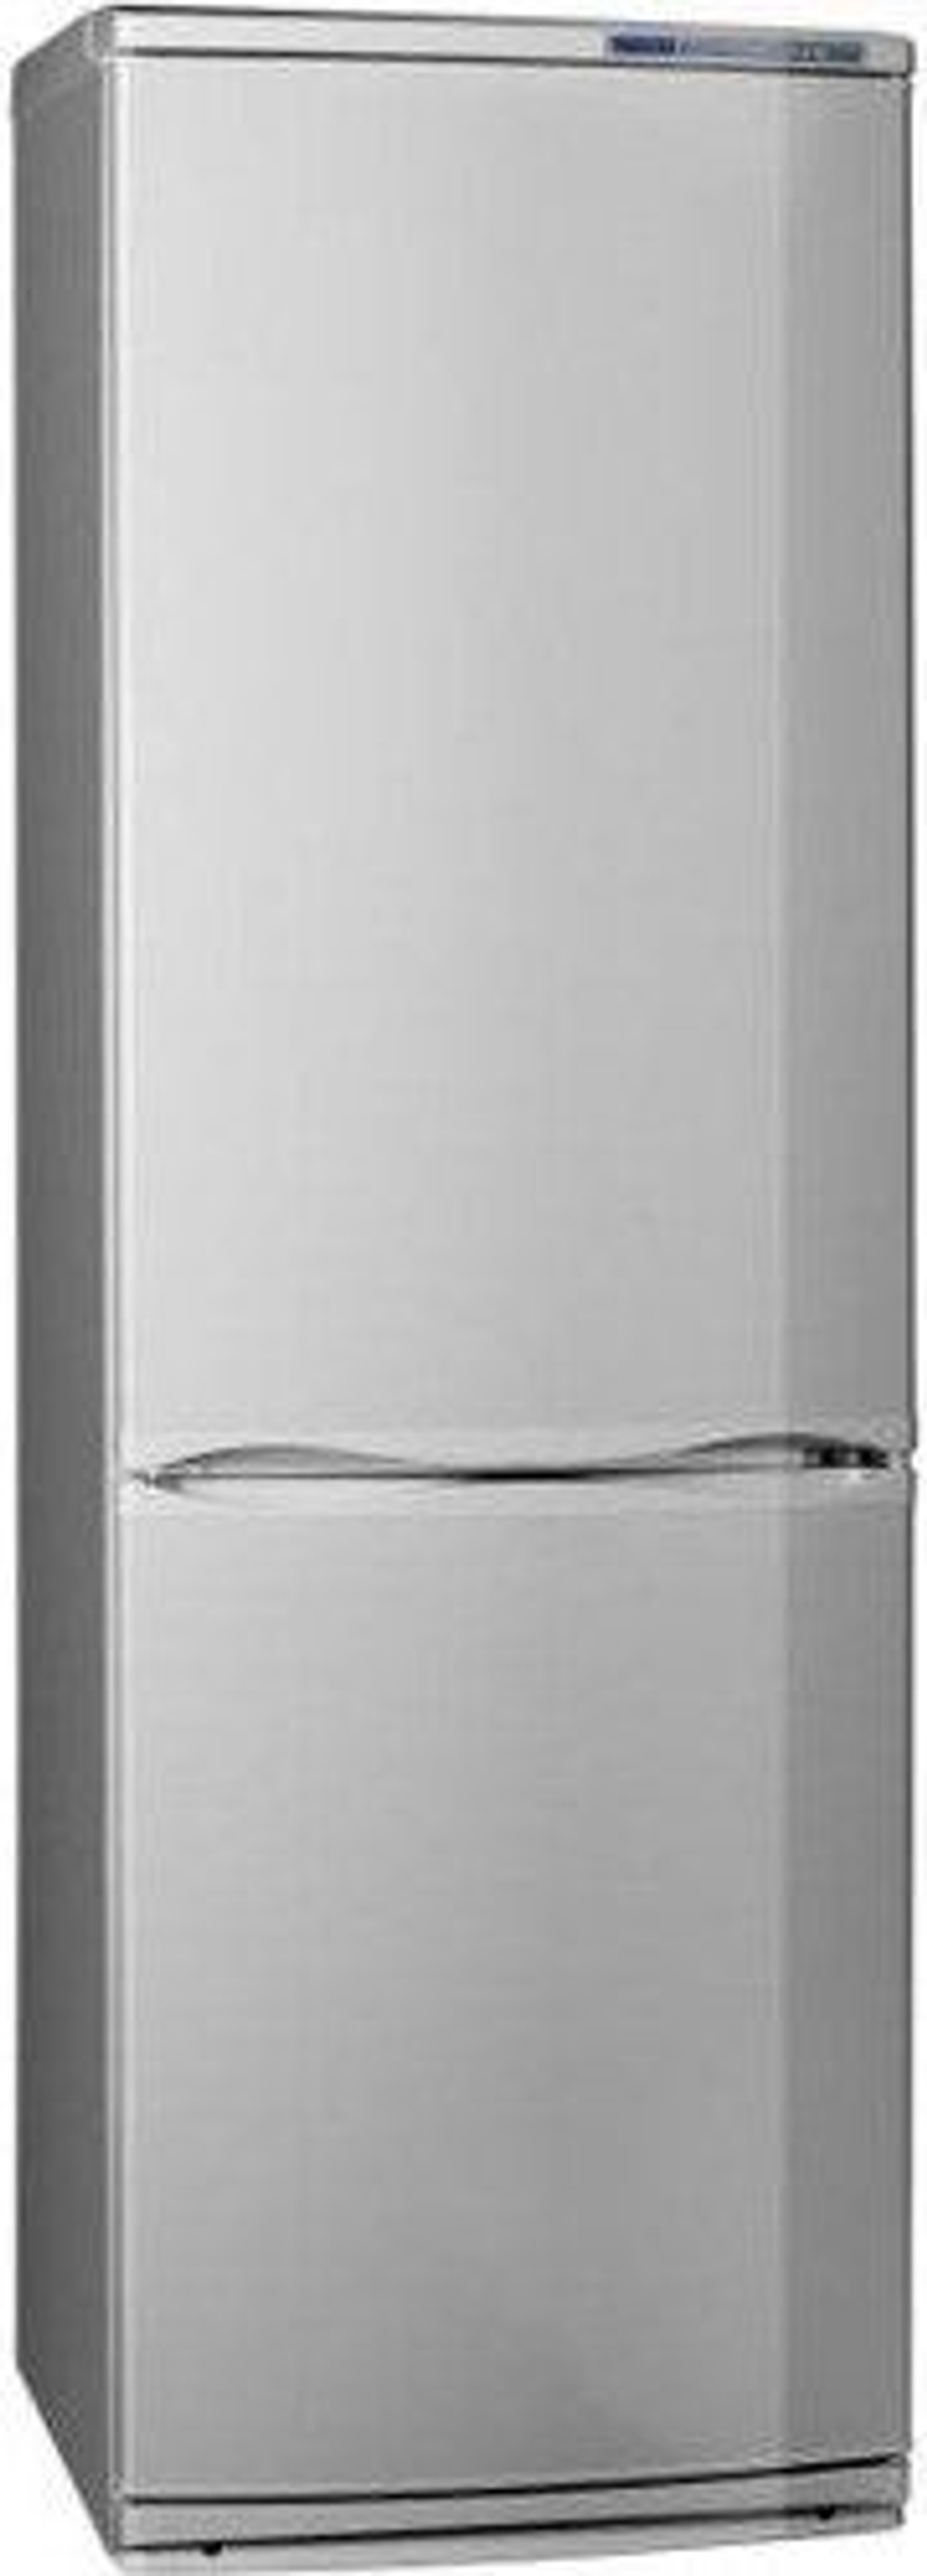 Холодильник Atlant 6025-080 серебро